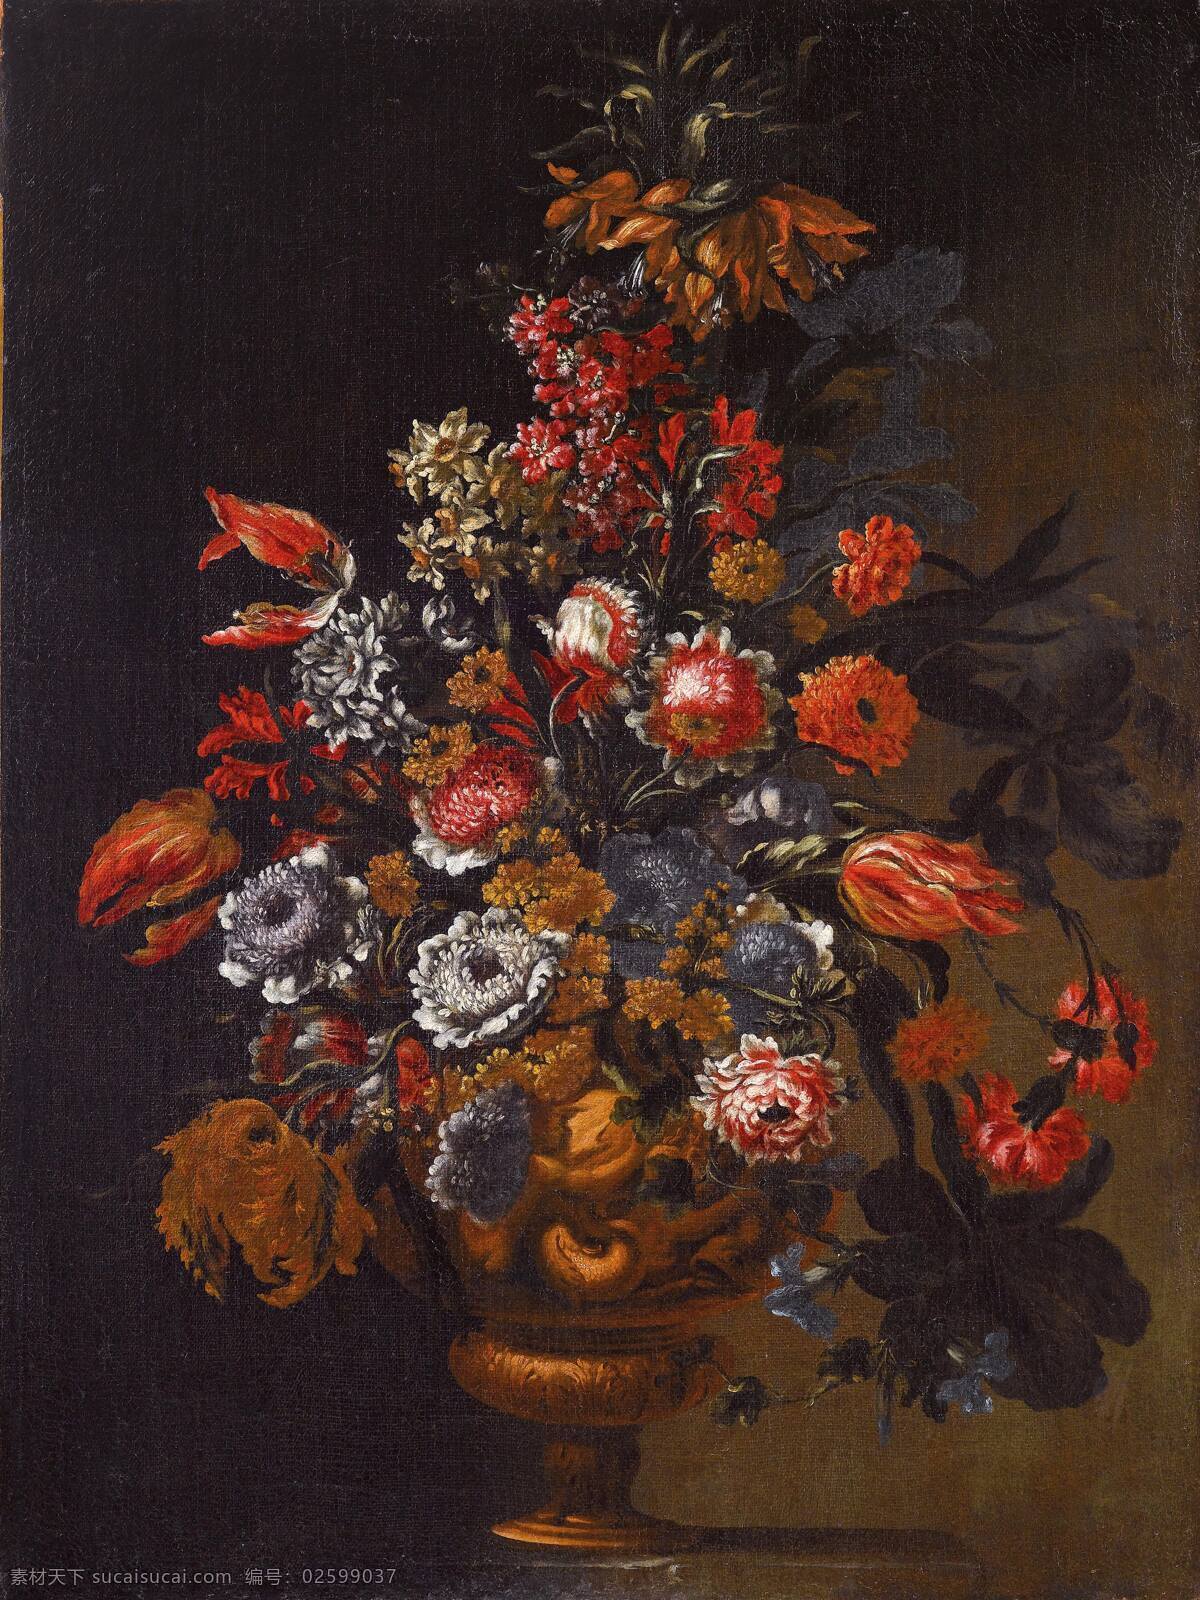 静物鲜花 混搭鲜花 永恒之美 铜制花瓶 巴洛克时期 古典油画 油画 绘画书法 文化艺术